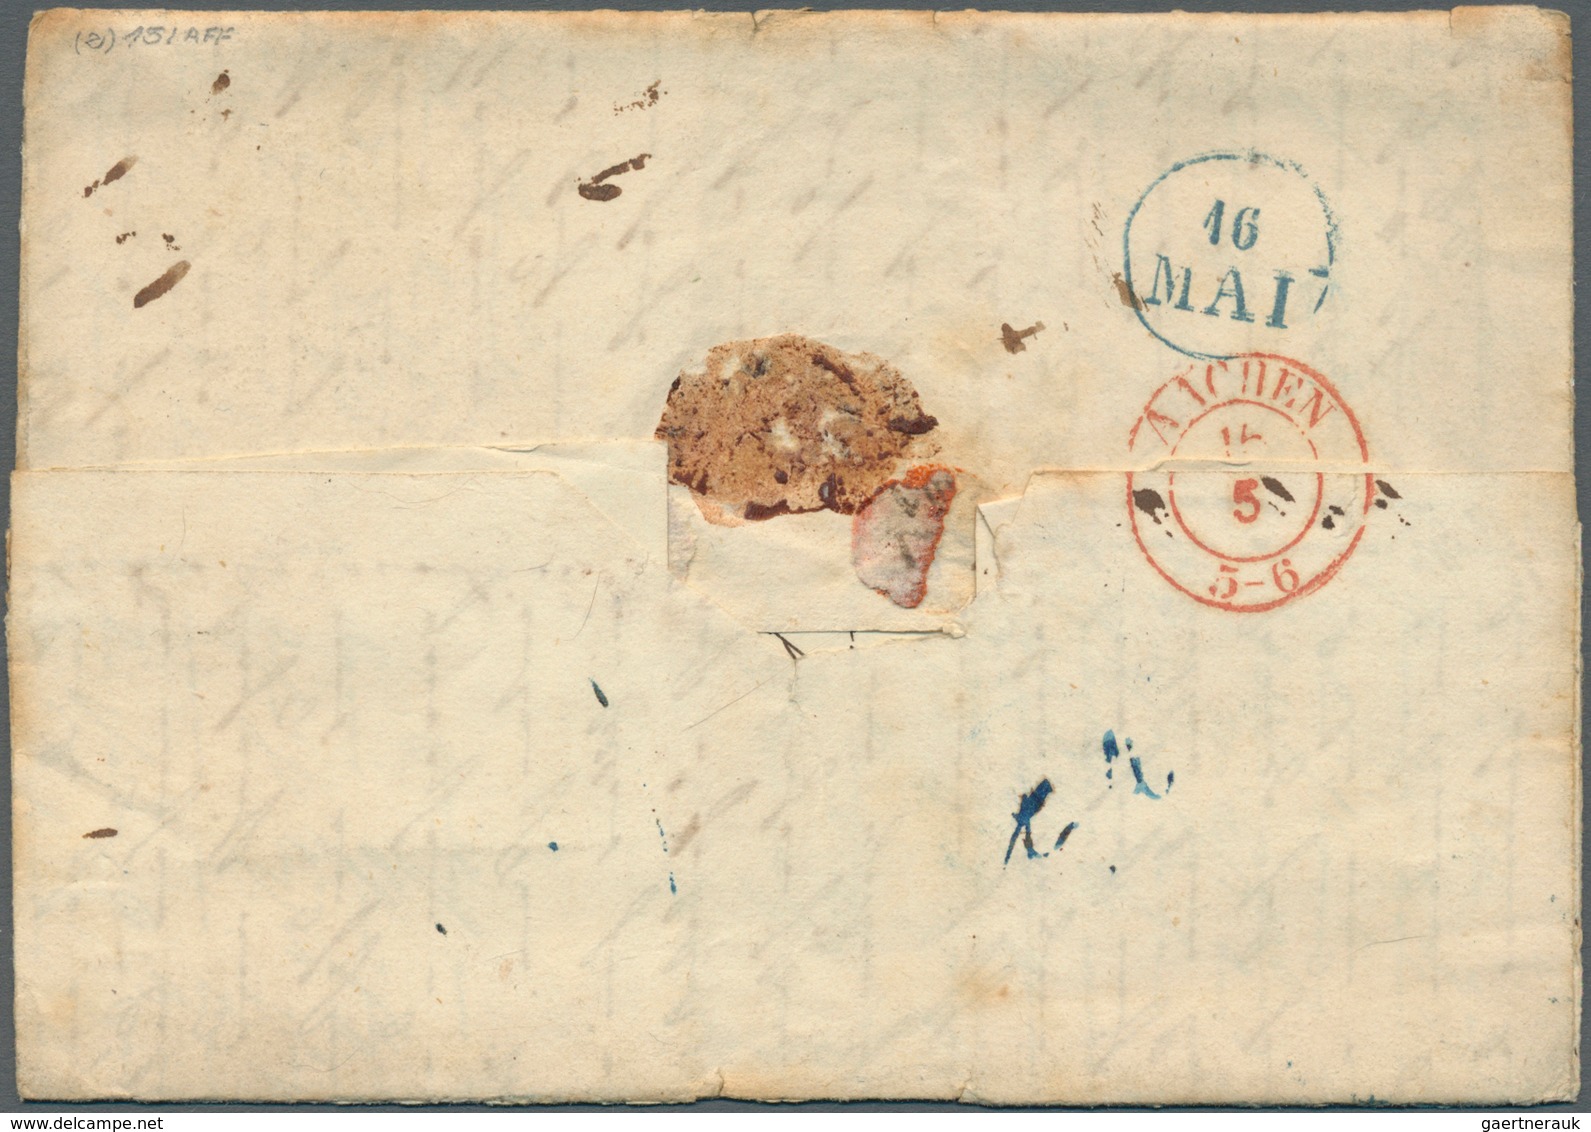 Hannover - Vorphilatelie: 1852, 2 Kompl. Faltbriefe Einer Korrespondenz Aus Den USA, Dabei Brief Von - Prephilately